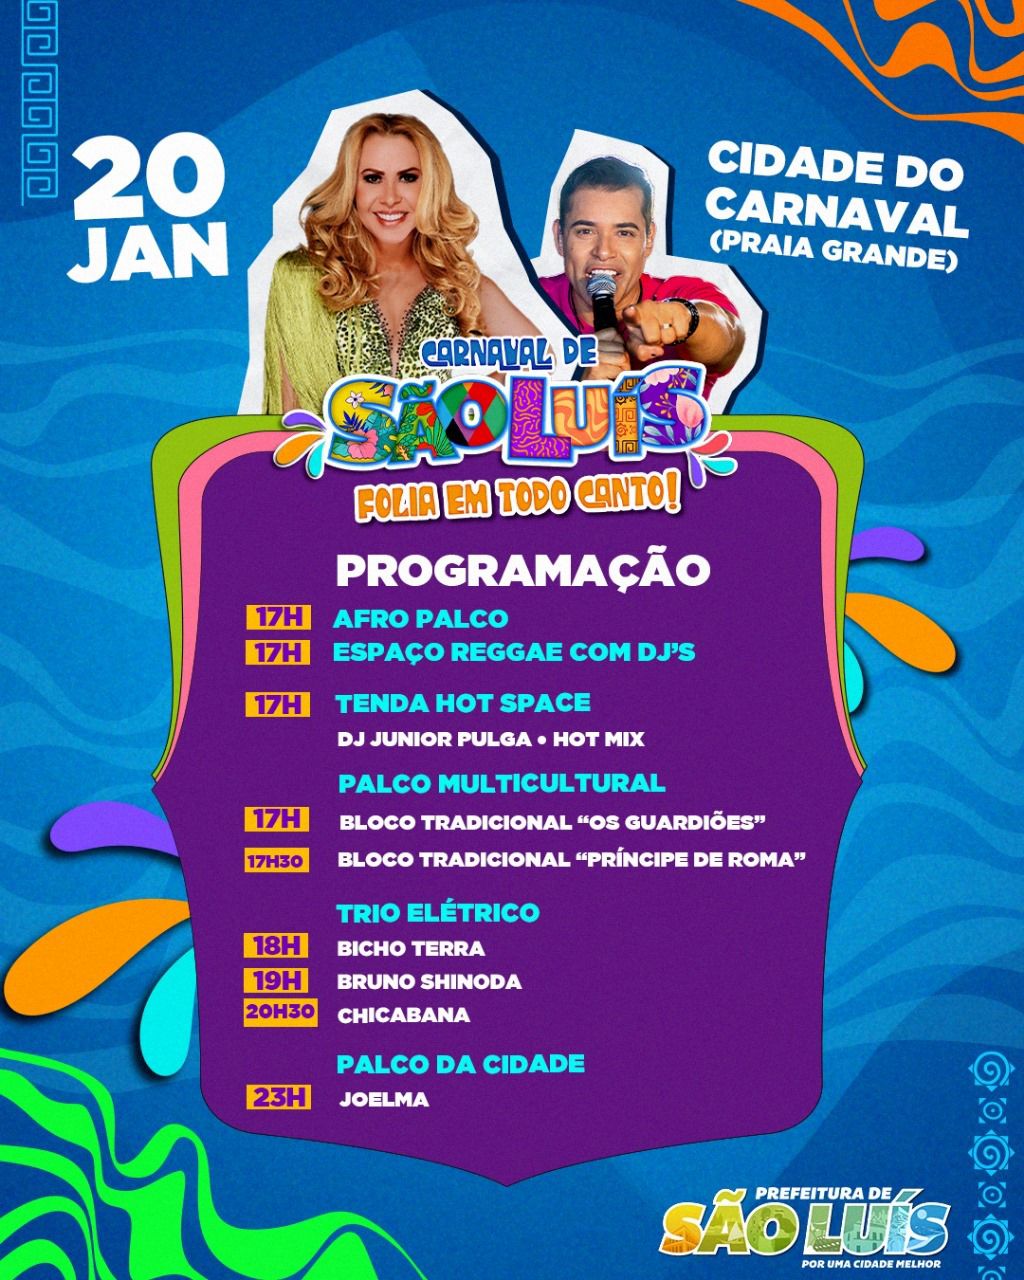 Prefeitura de São Luís dá a largada para a folia carnavalesca neste sábado (20) com inauguração da Cidade do Carnaval